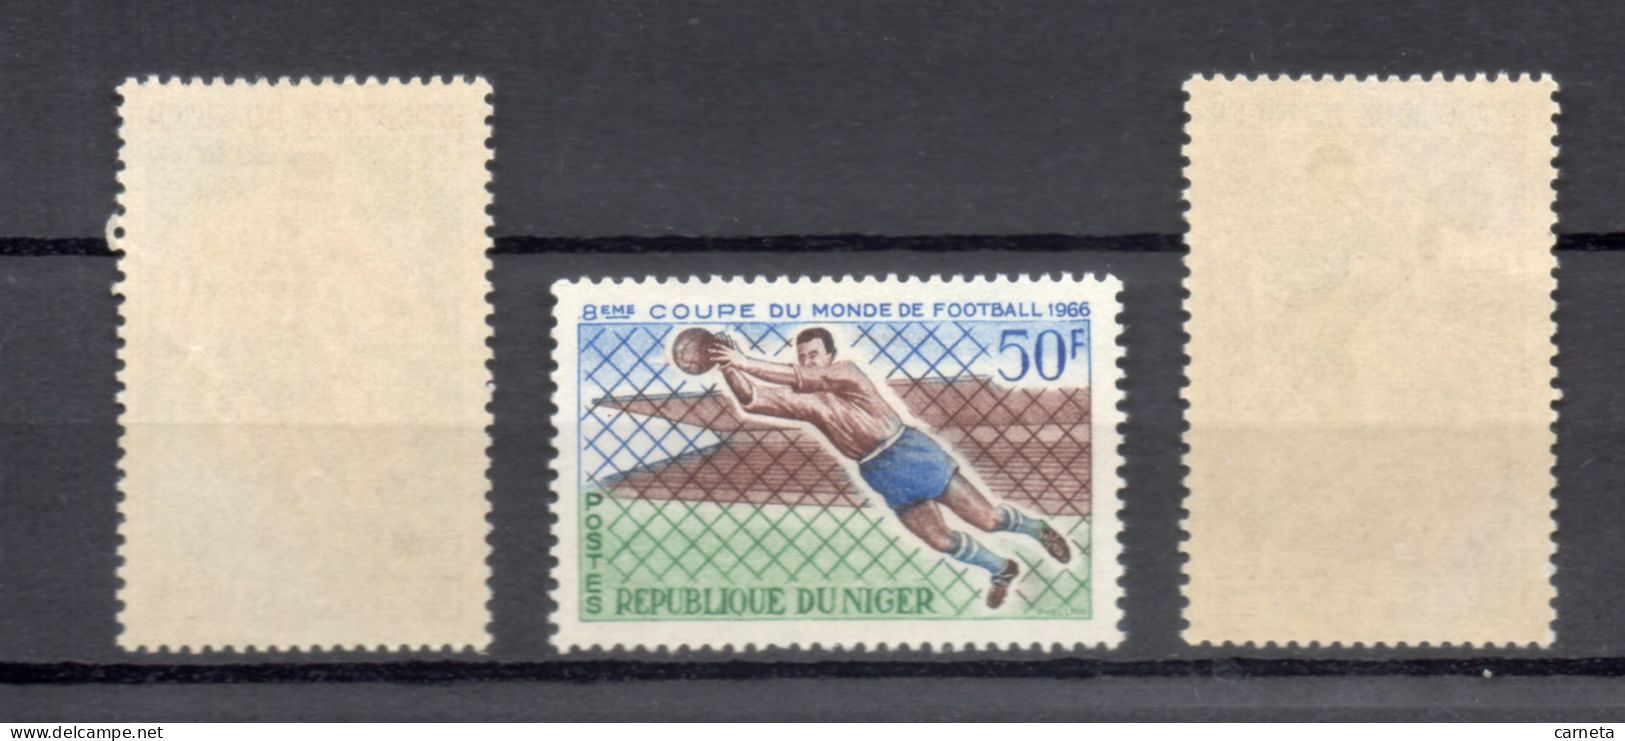 NIGER N° 178 à 180   NEUFS SANS CHARNIERE  COTE 4.50€    FOOTBALL SPORT  VOIR DESCRIPTION - Niger (1960-...)